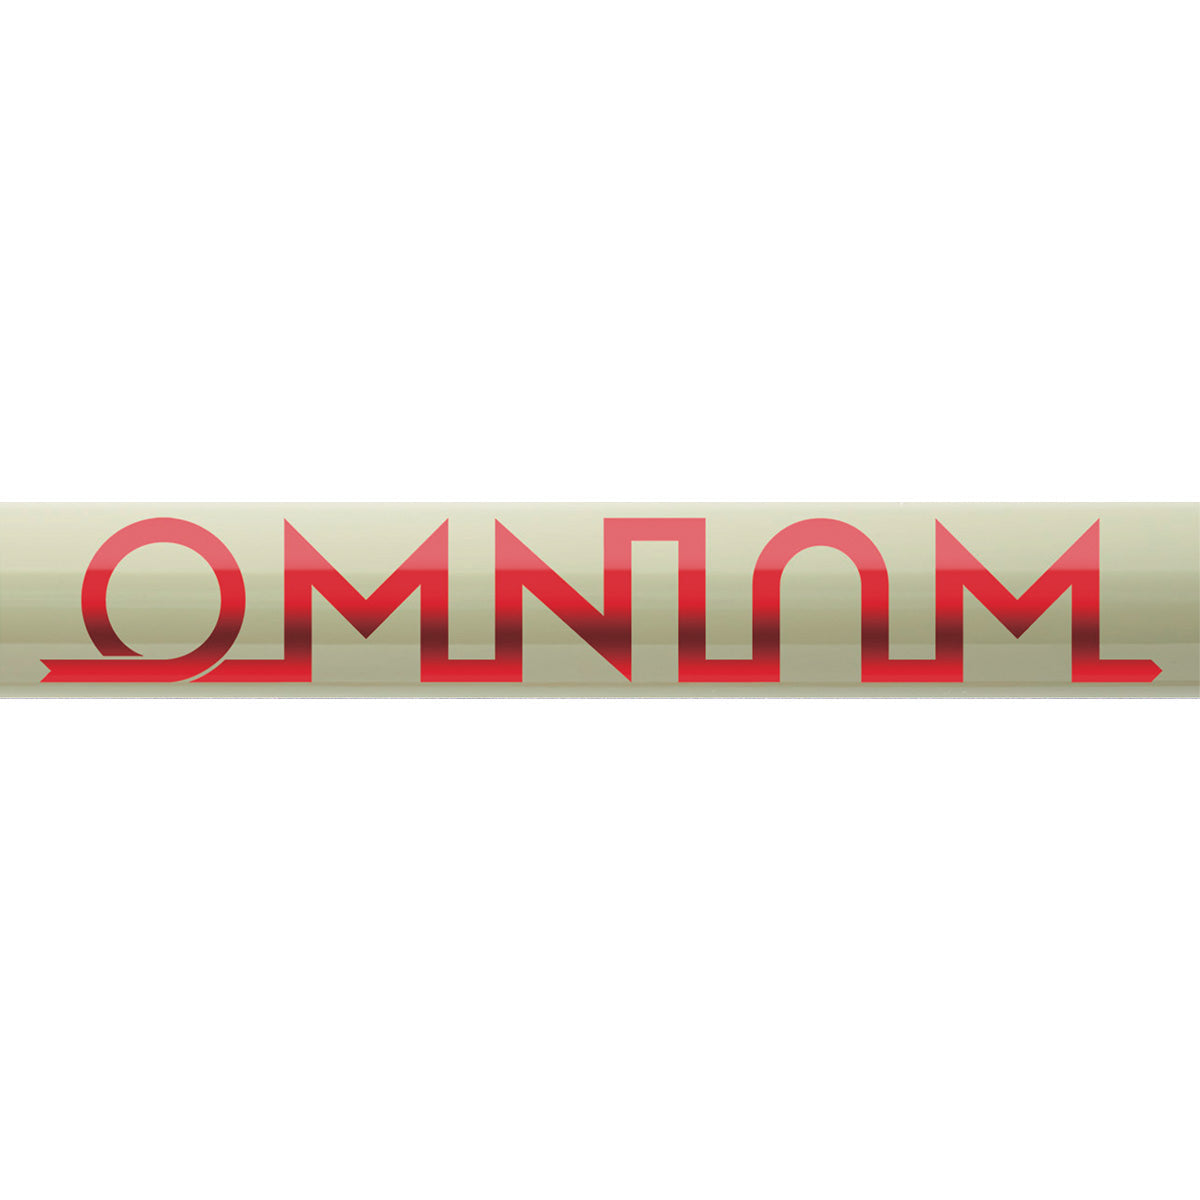 [予約商品] OMNIUM Cargo V3 Complete Shimano 1x11